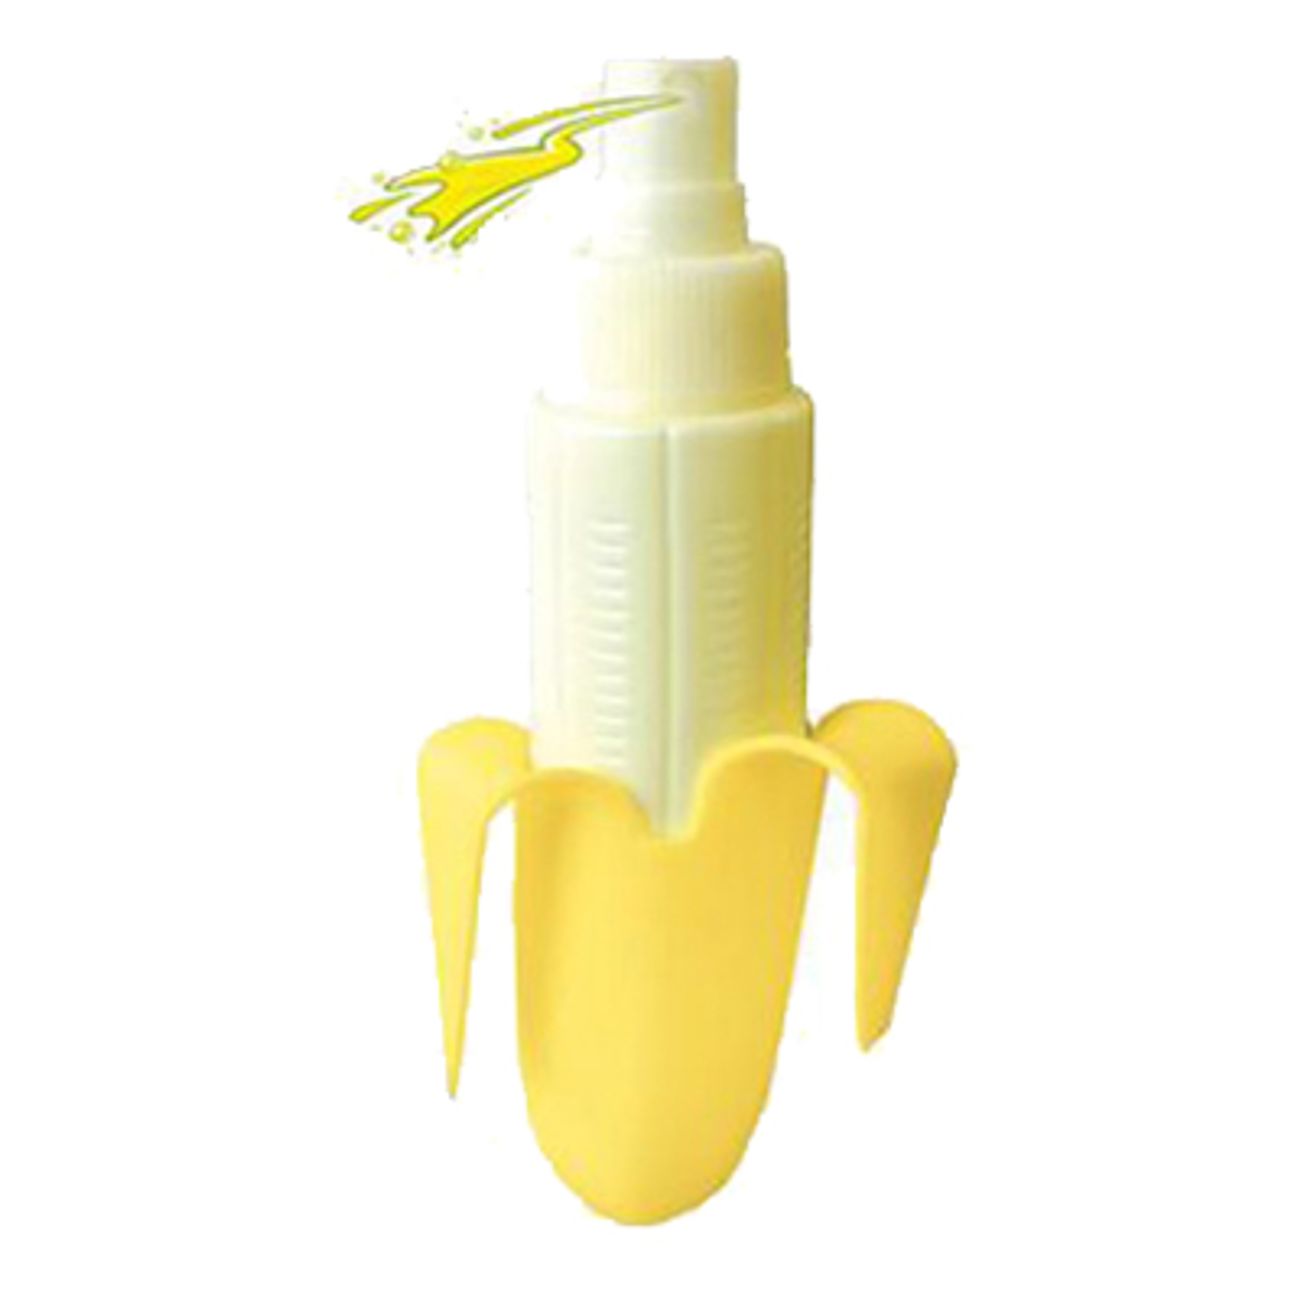 banana-spray-2